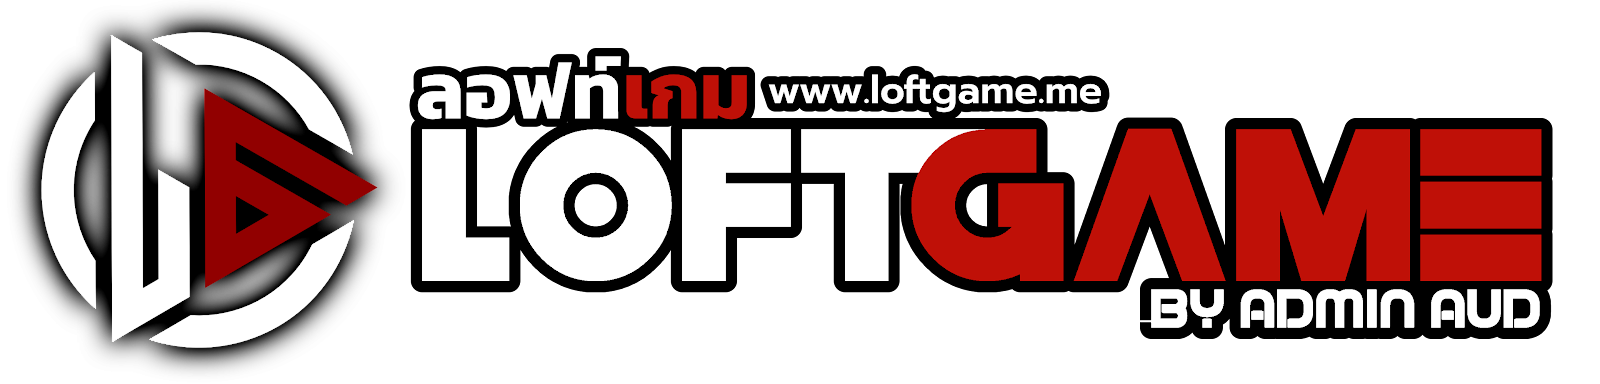 LOFTGAME - ลอฟท์เกม - รีวิว บทความ ข่าวสาร เกม ไอที และไลฟ์สไตล์